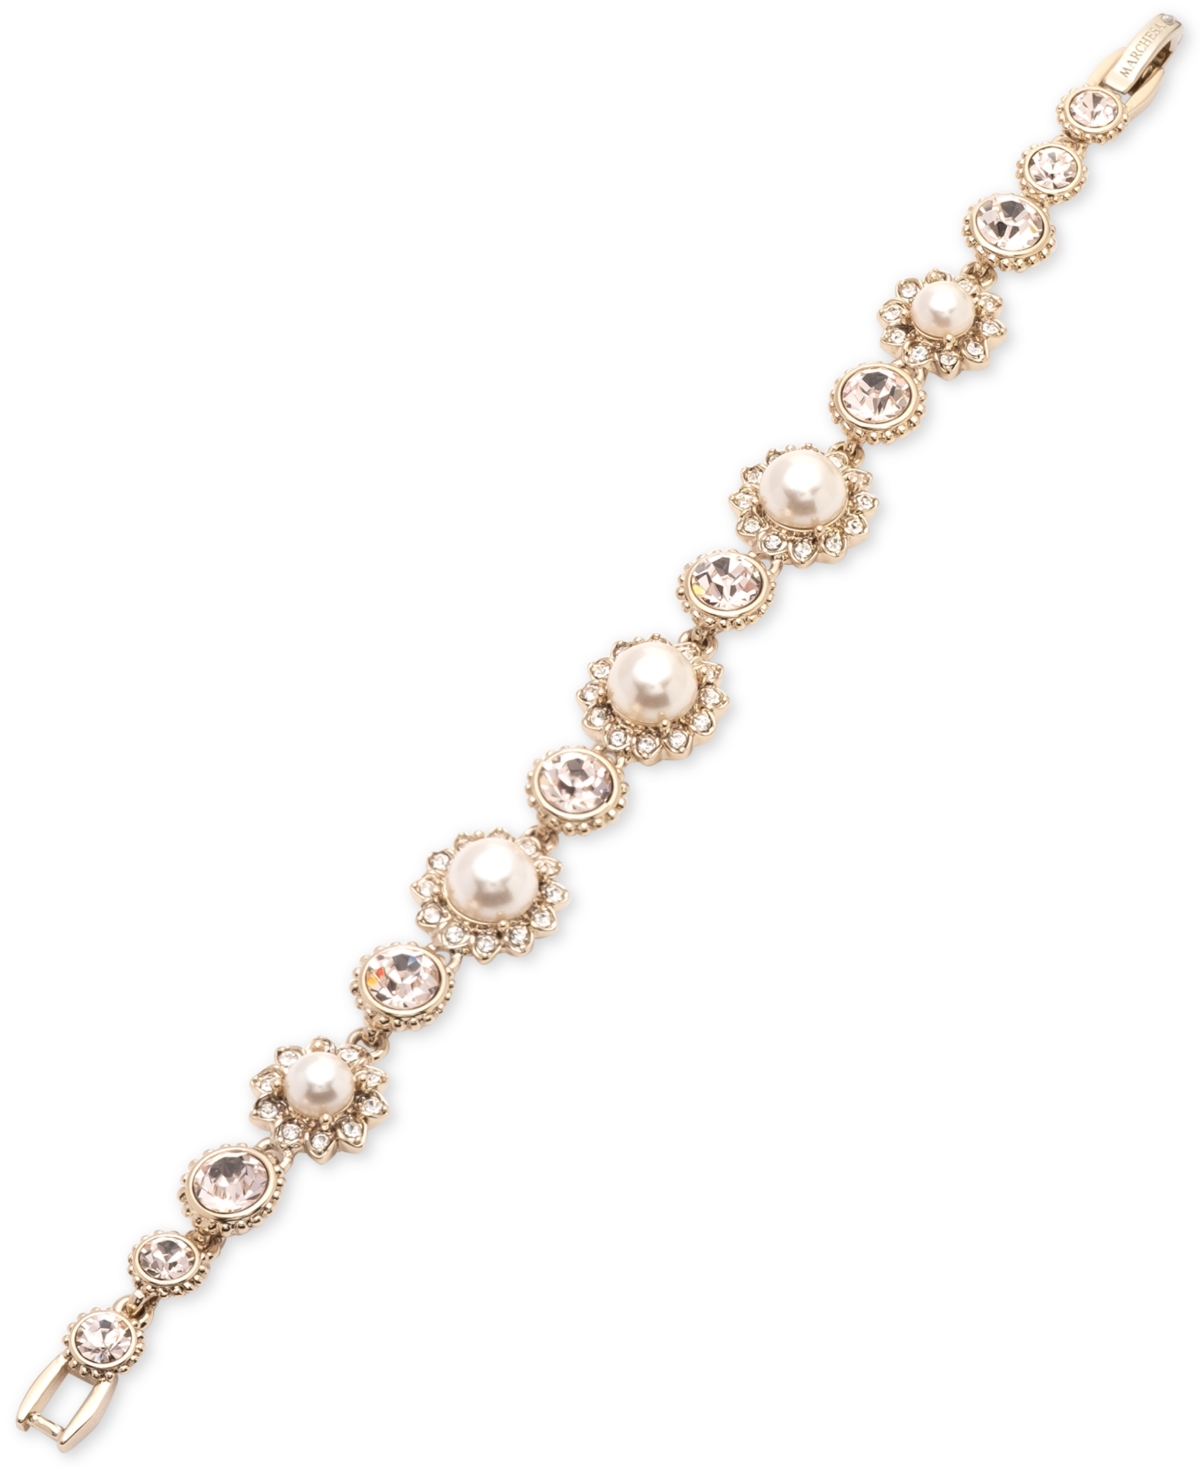 Gold-Tone Imitation Pearl & Crystal Link Bracelet - Gold